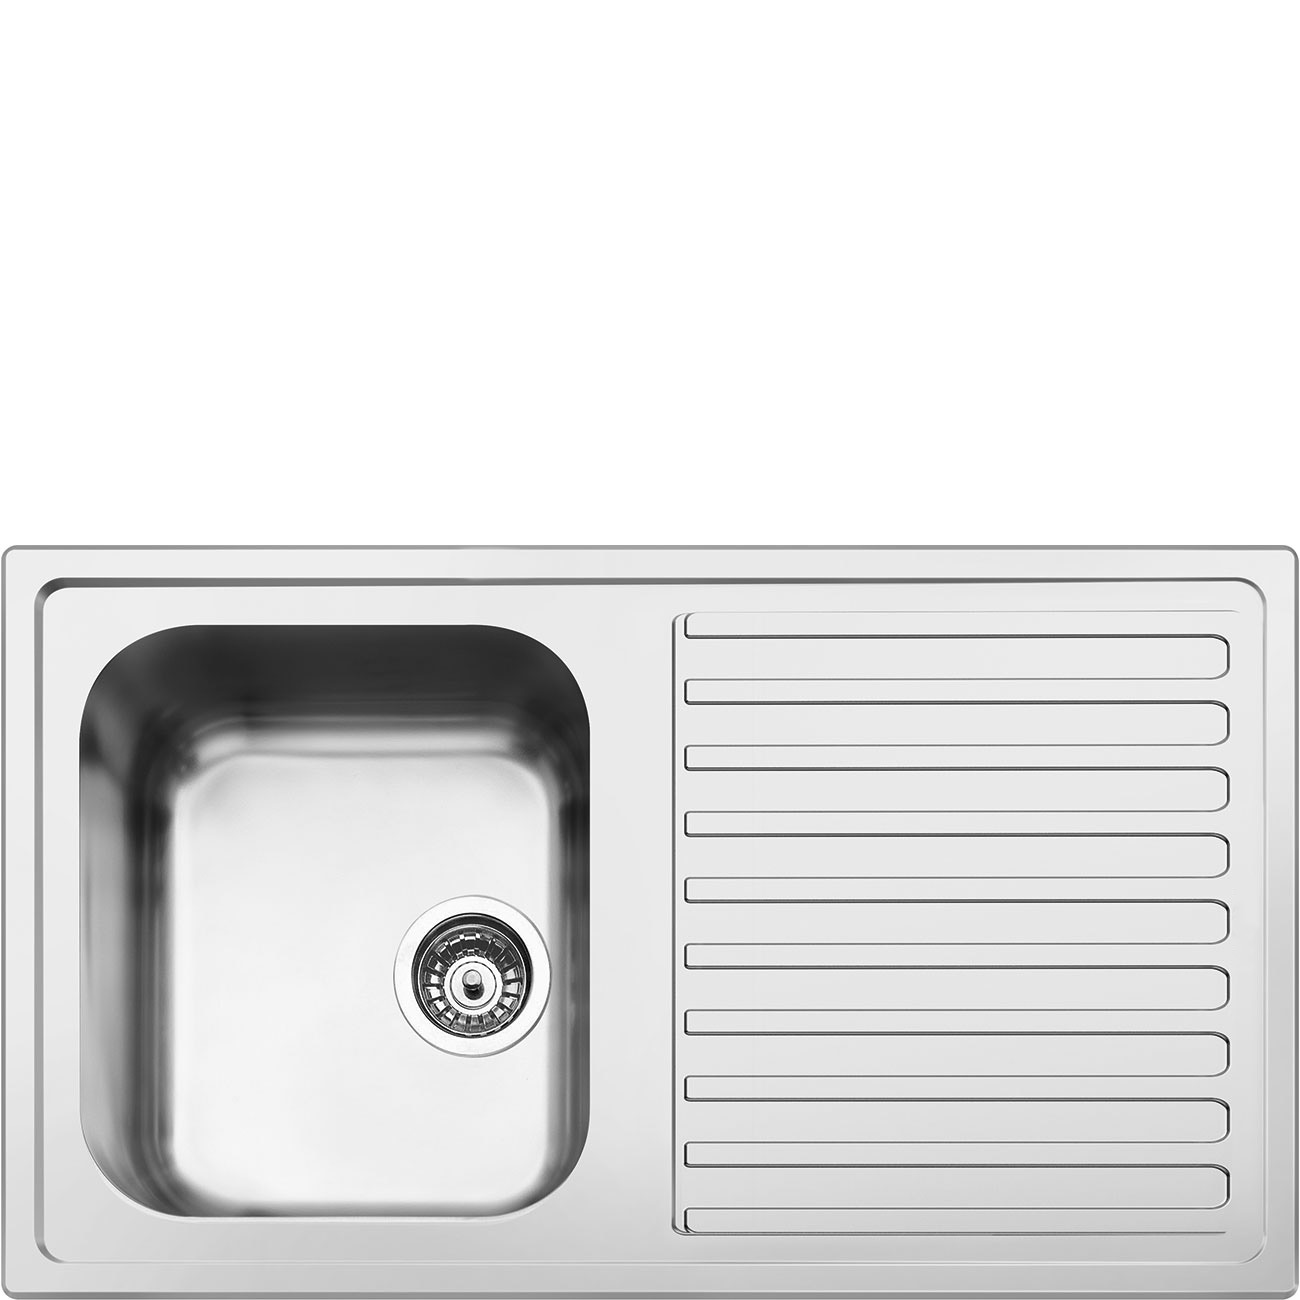 Kitchen sink - Smeg_1